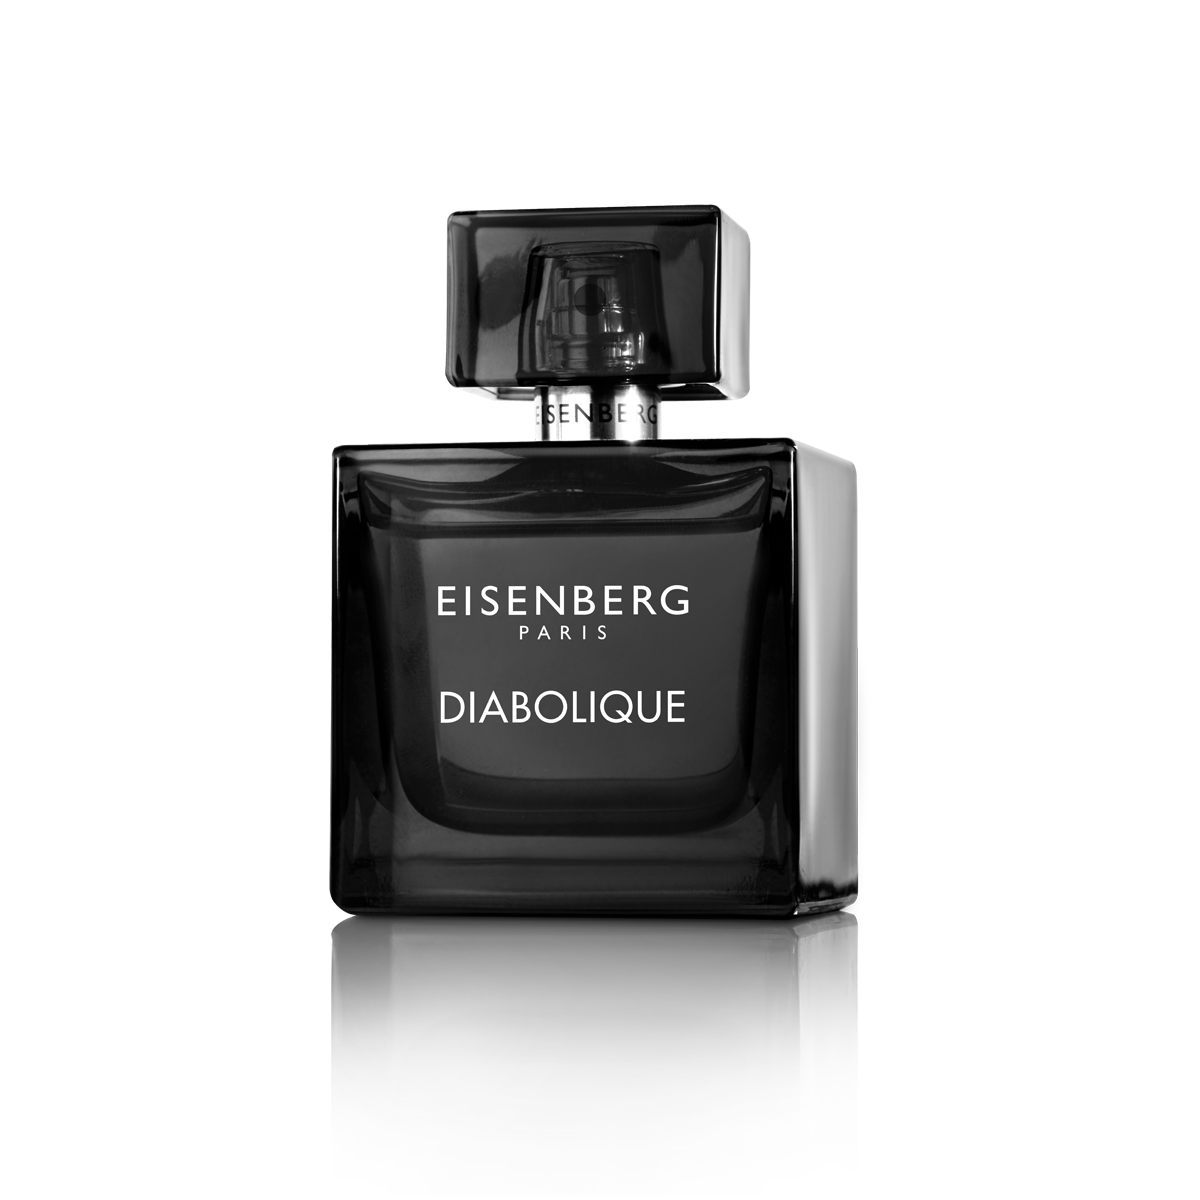 Eau de parfum for men | EISENBERG Paris